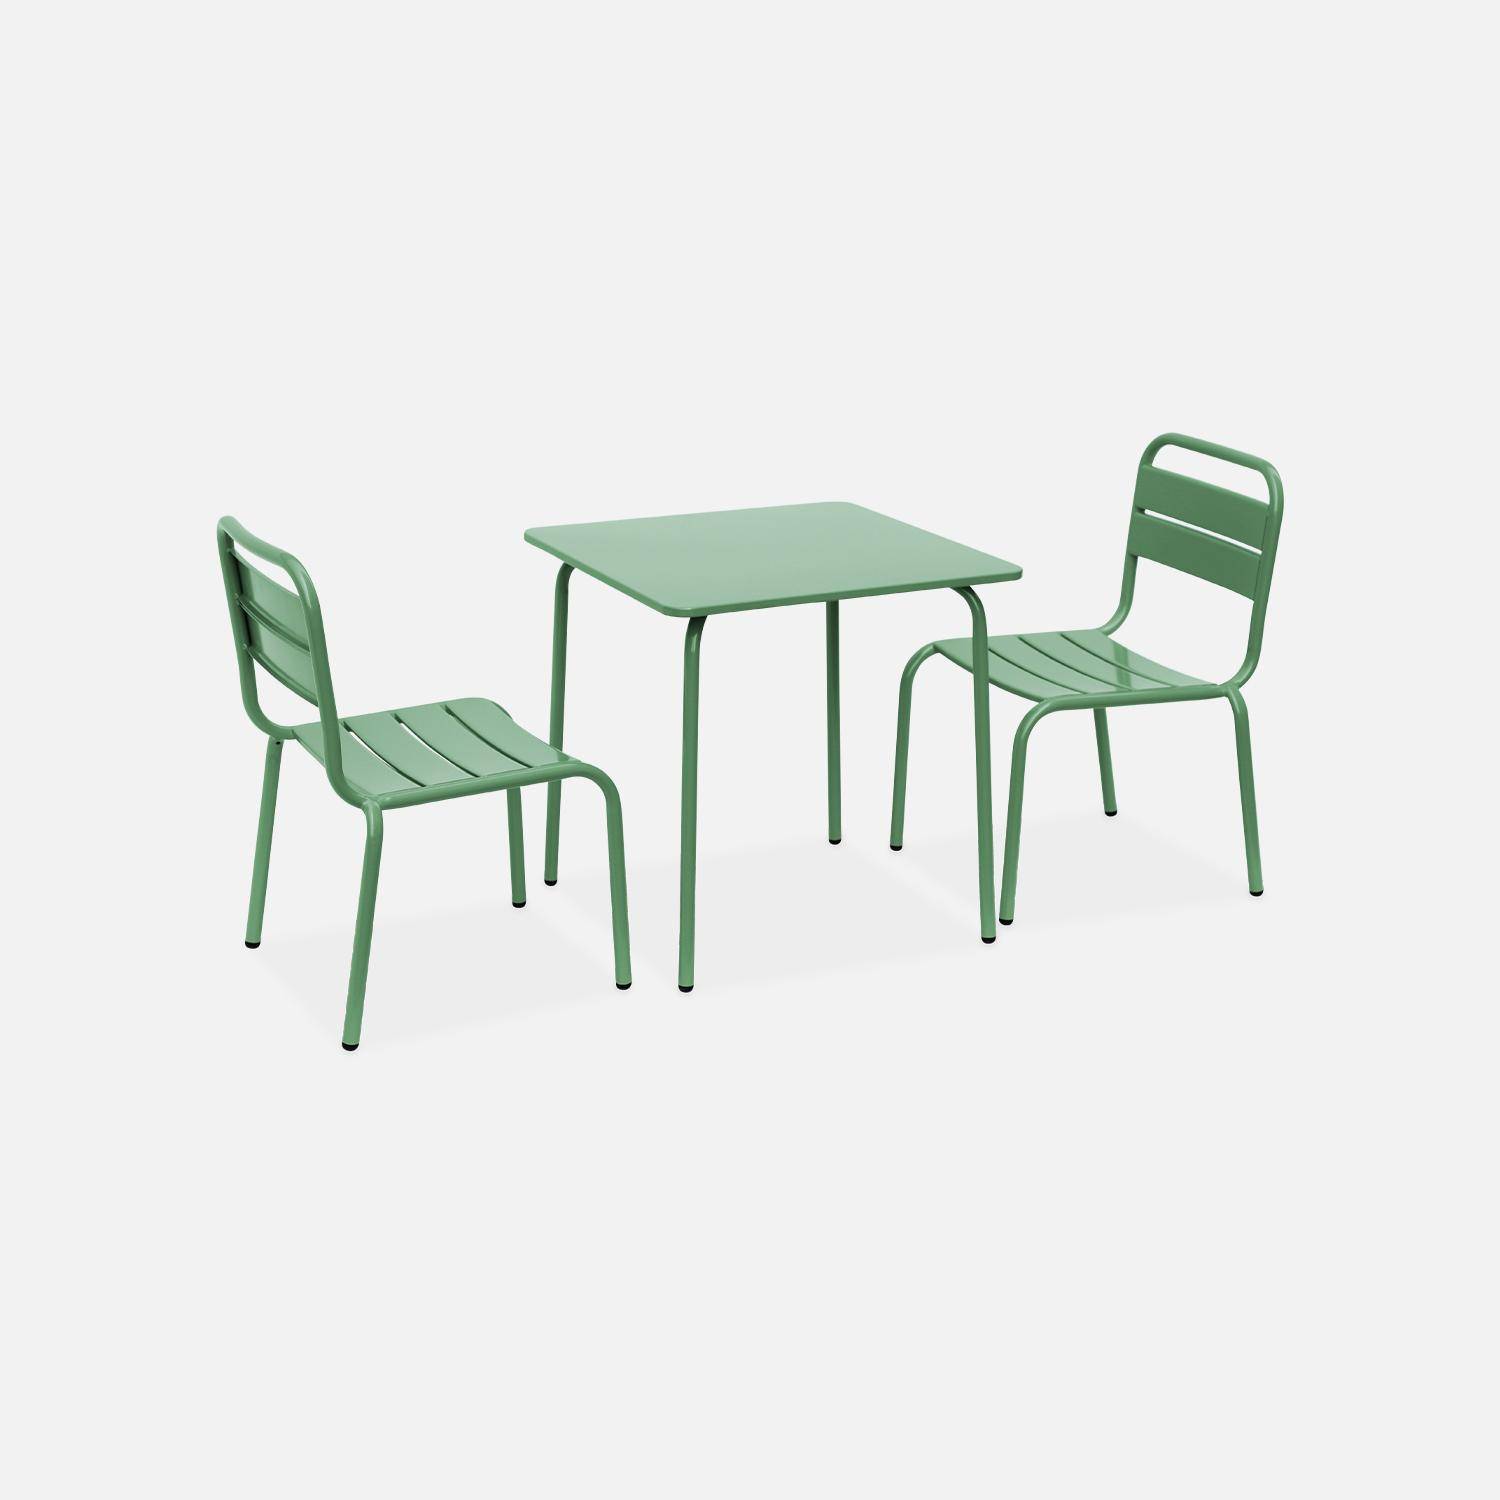 Tisch 48x48cm und 2 Stühle für Kinder, graugrün, 48x48cm, für draußen verwendbar - Anna,sweeek,Photo4